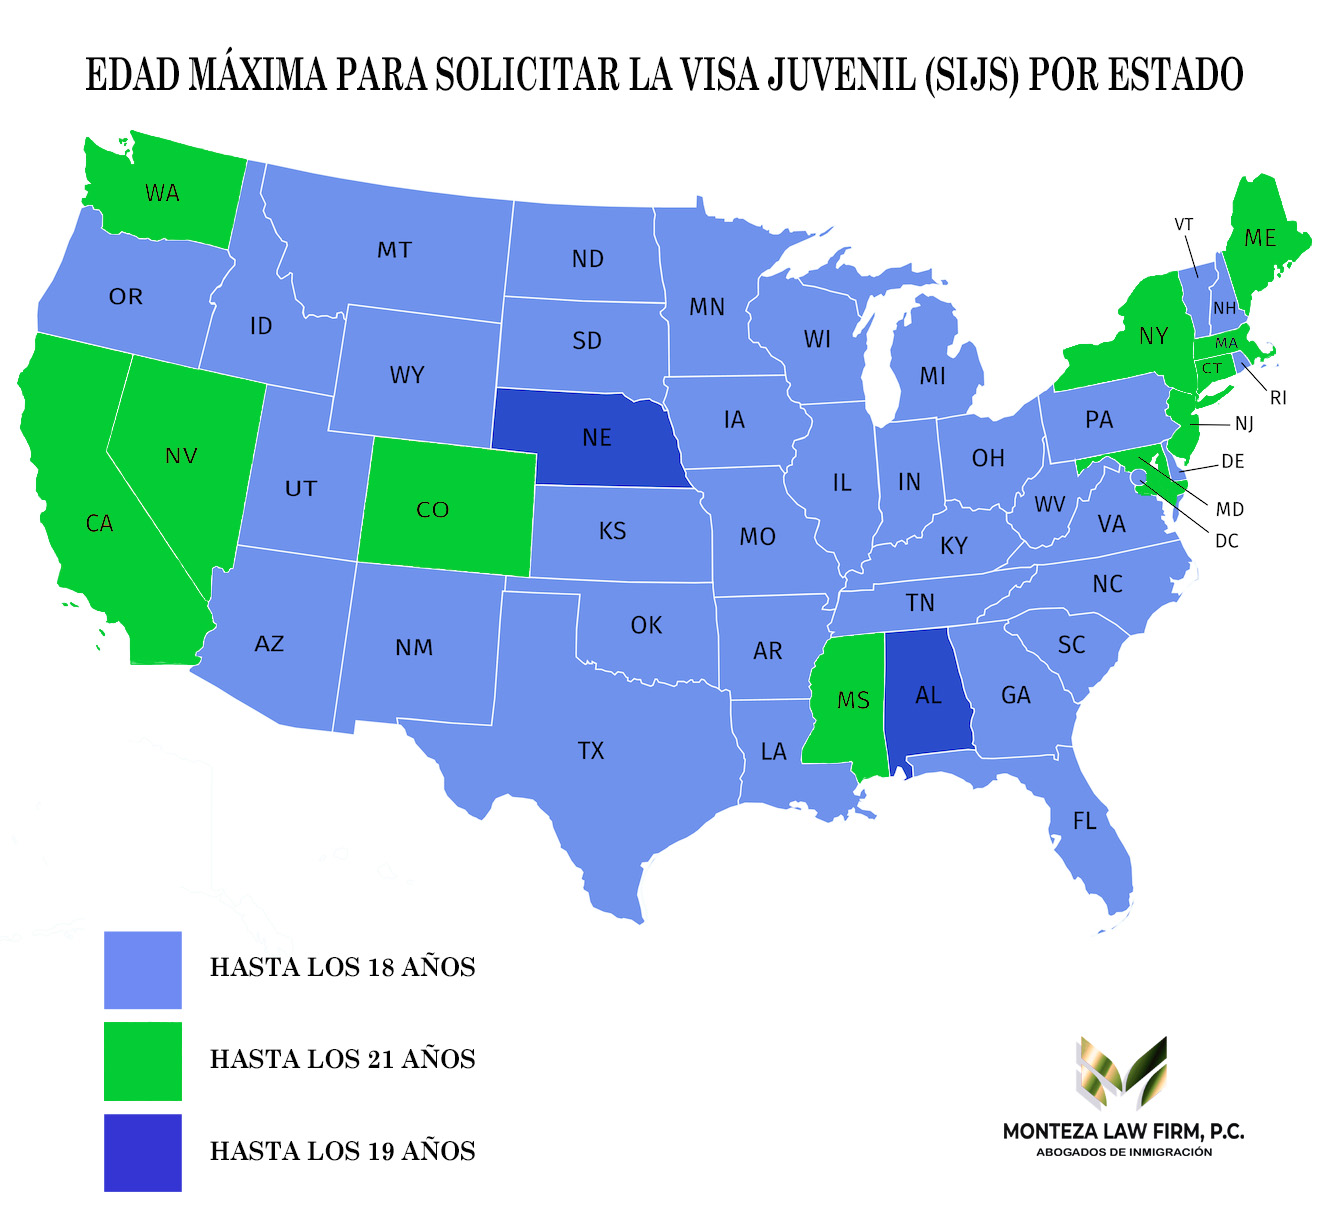 alt="Mapa de Estados Unidos con la edad maxima para la visa o residencia juvenil SIJS. Area triestatal hasta los 21 años"